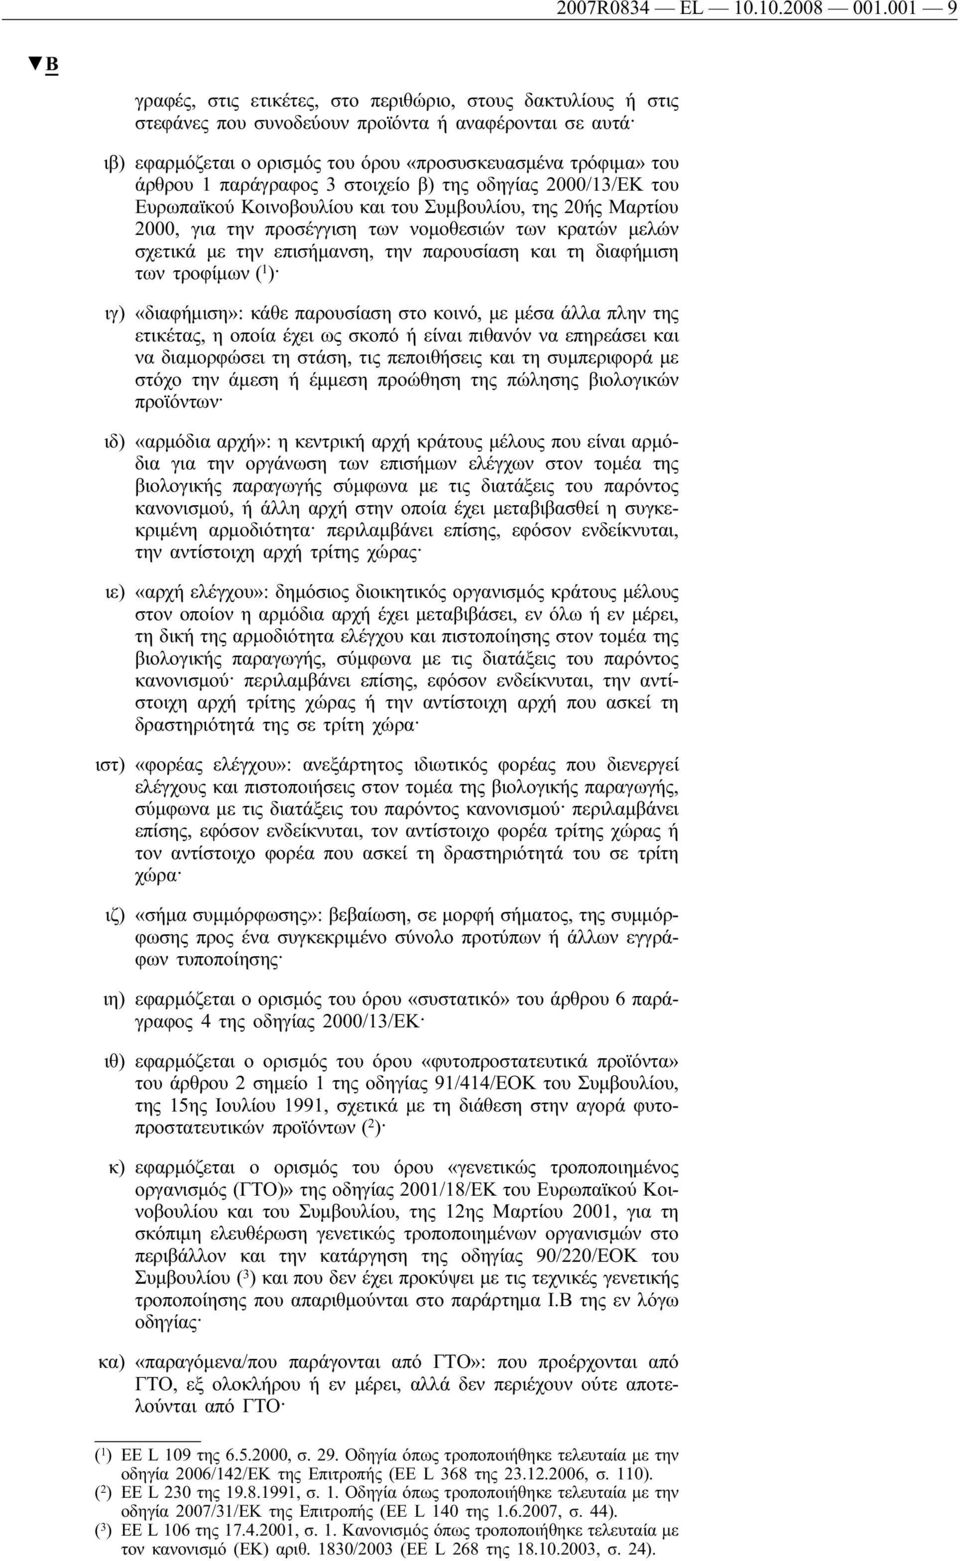 παράγραφος 3 στοιχείο β) της οδηγίας 2000/13/ΕΚ του Ευρωπαϊκού Κοινοβουλίου και του Συμβουλίου, της 20ής Μαρτίου 2000, για την προσέγγιση των νομοθεσιών των κρατών μελών σχετικά με την επισήμανση,